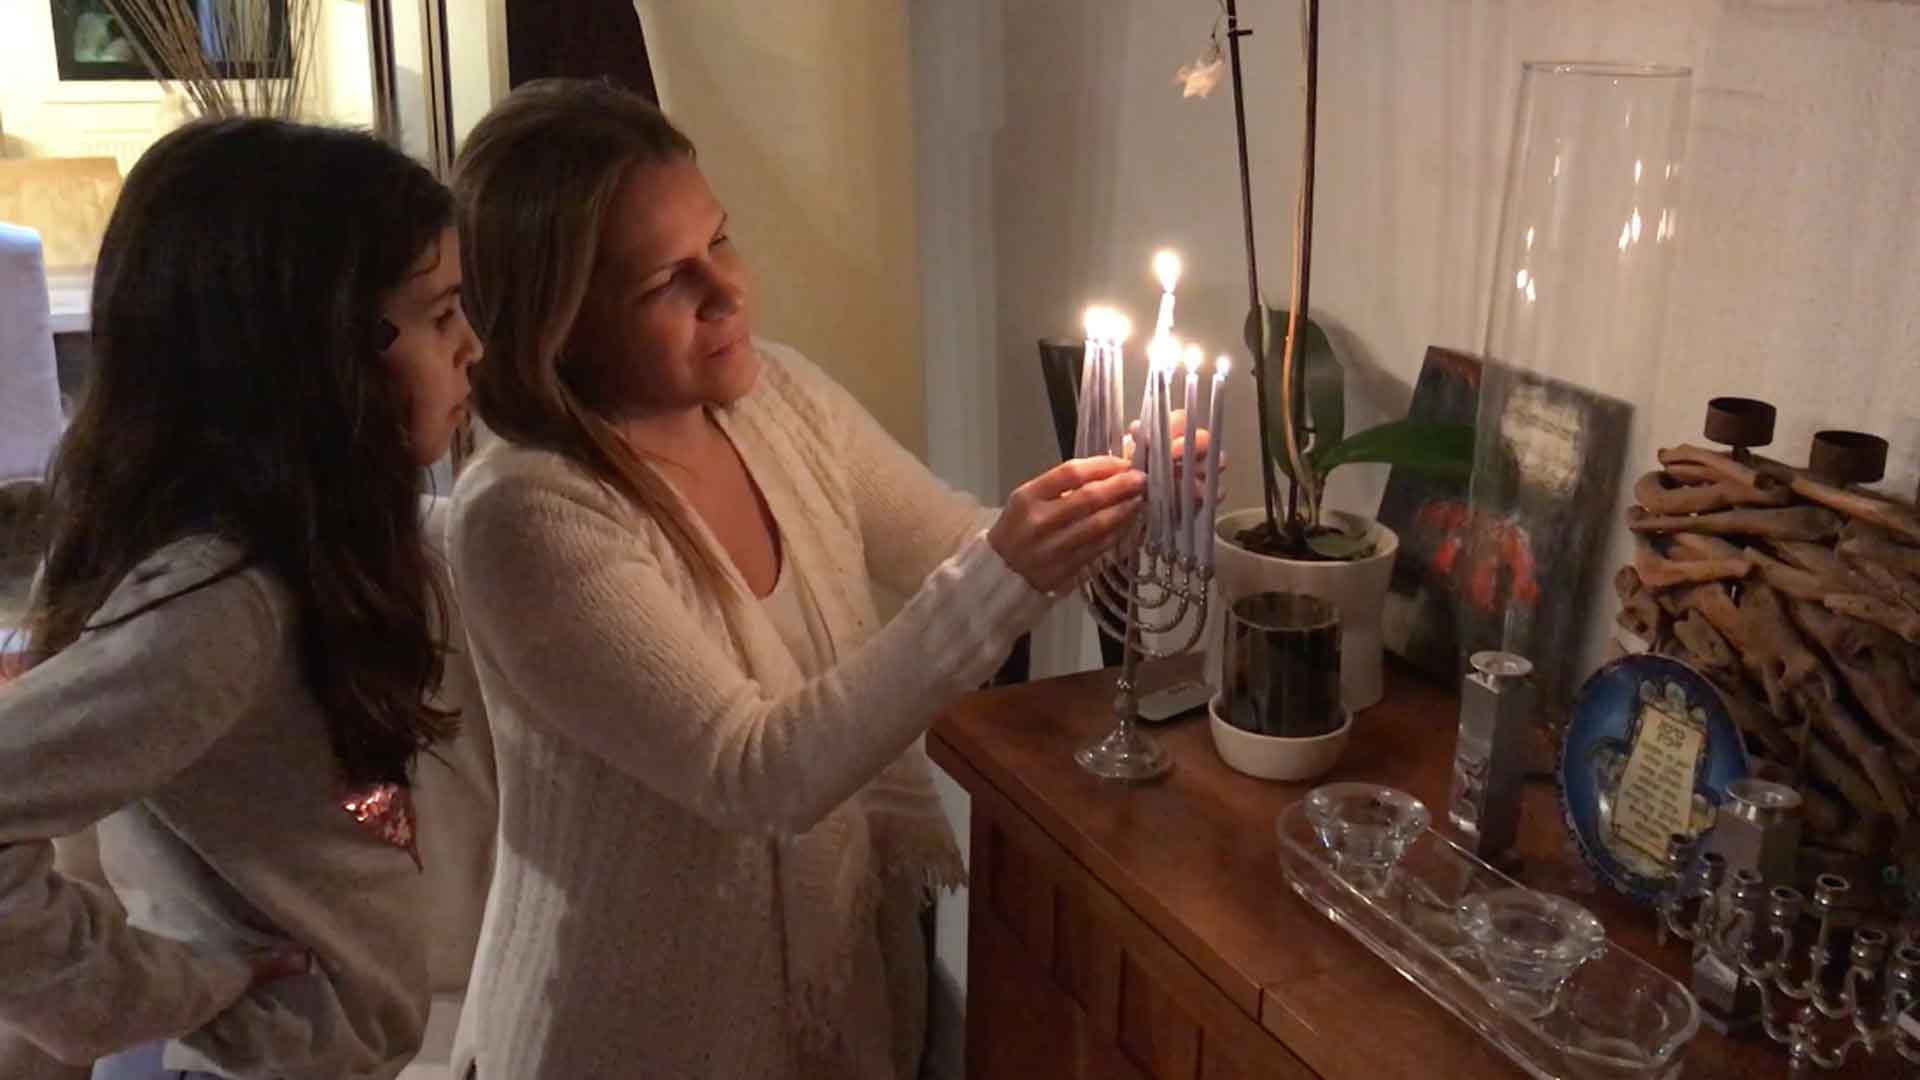 Comienza el Hanukkah, la fiesta judía de las luces